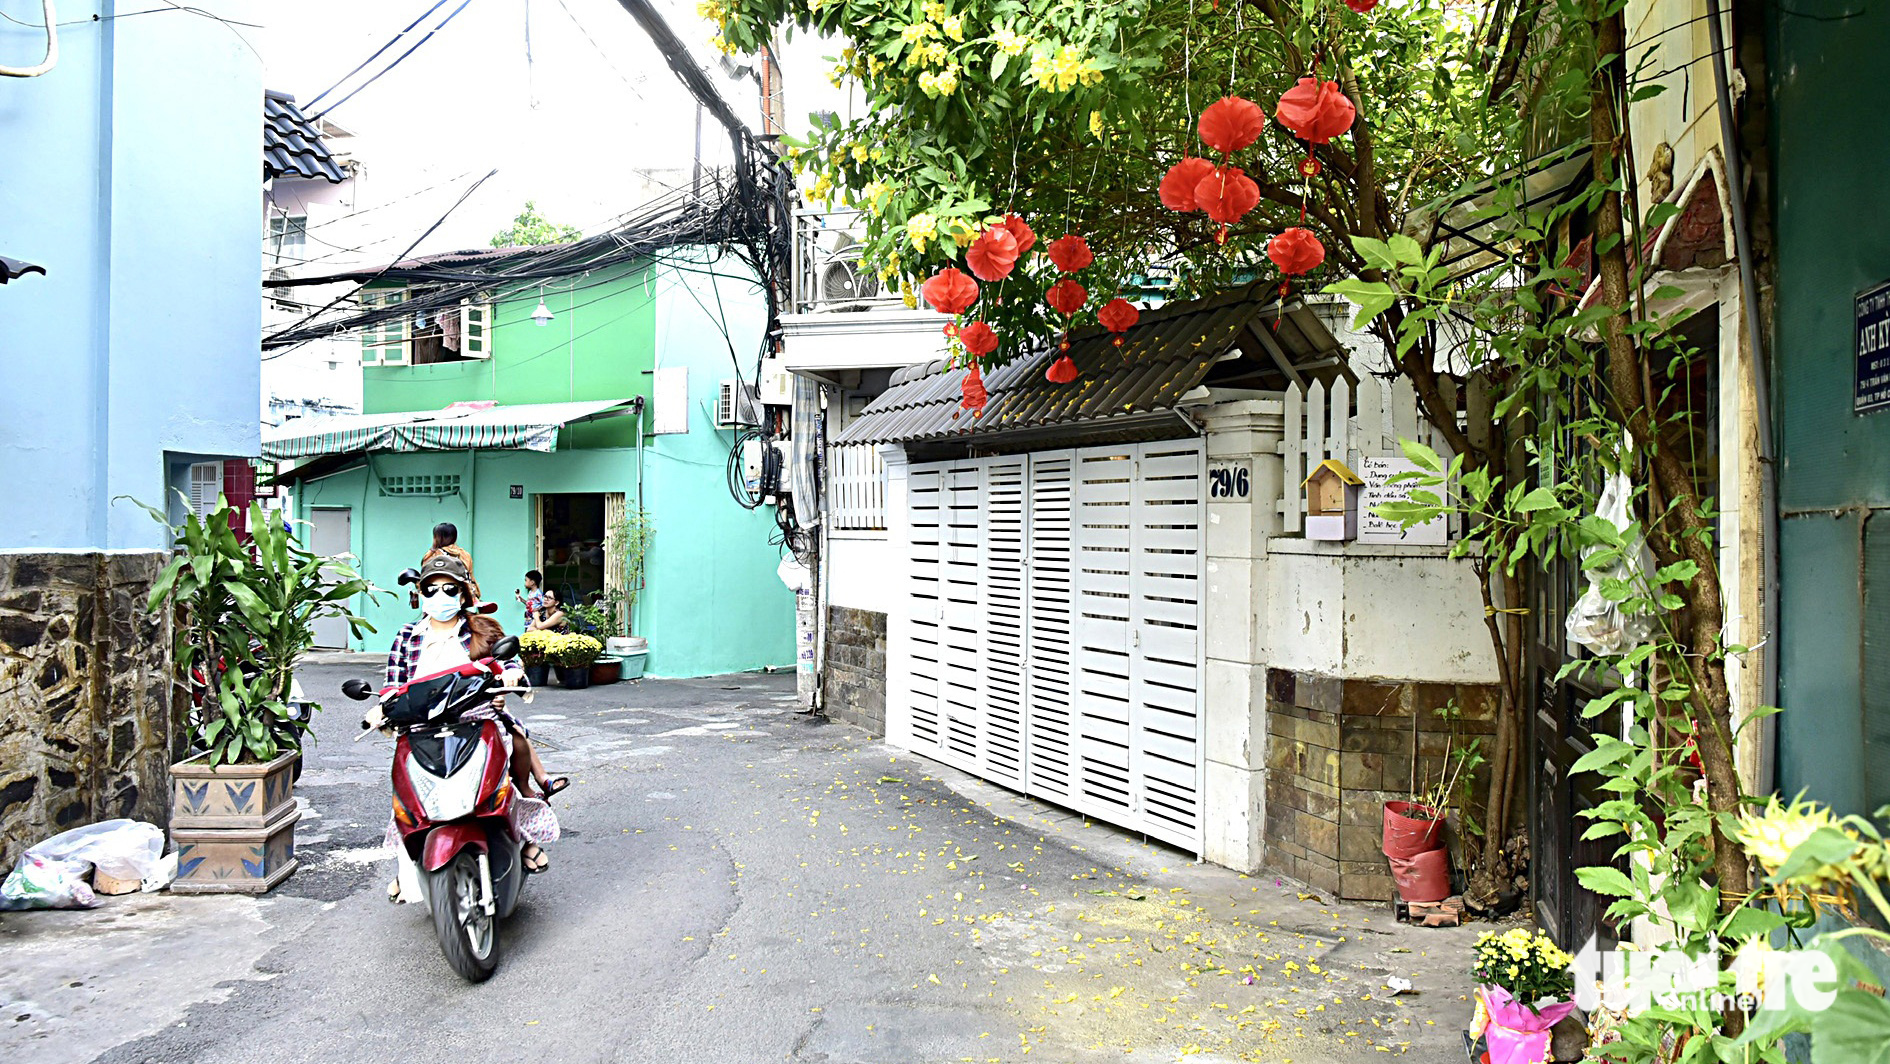 Đường phố Sài Gòn - Những ký ức thân thương - Kỳ 3: Hun hút một thời đường nhỏ xóm ga Sài Gòn - Ảnh 2.